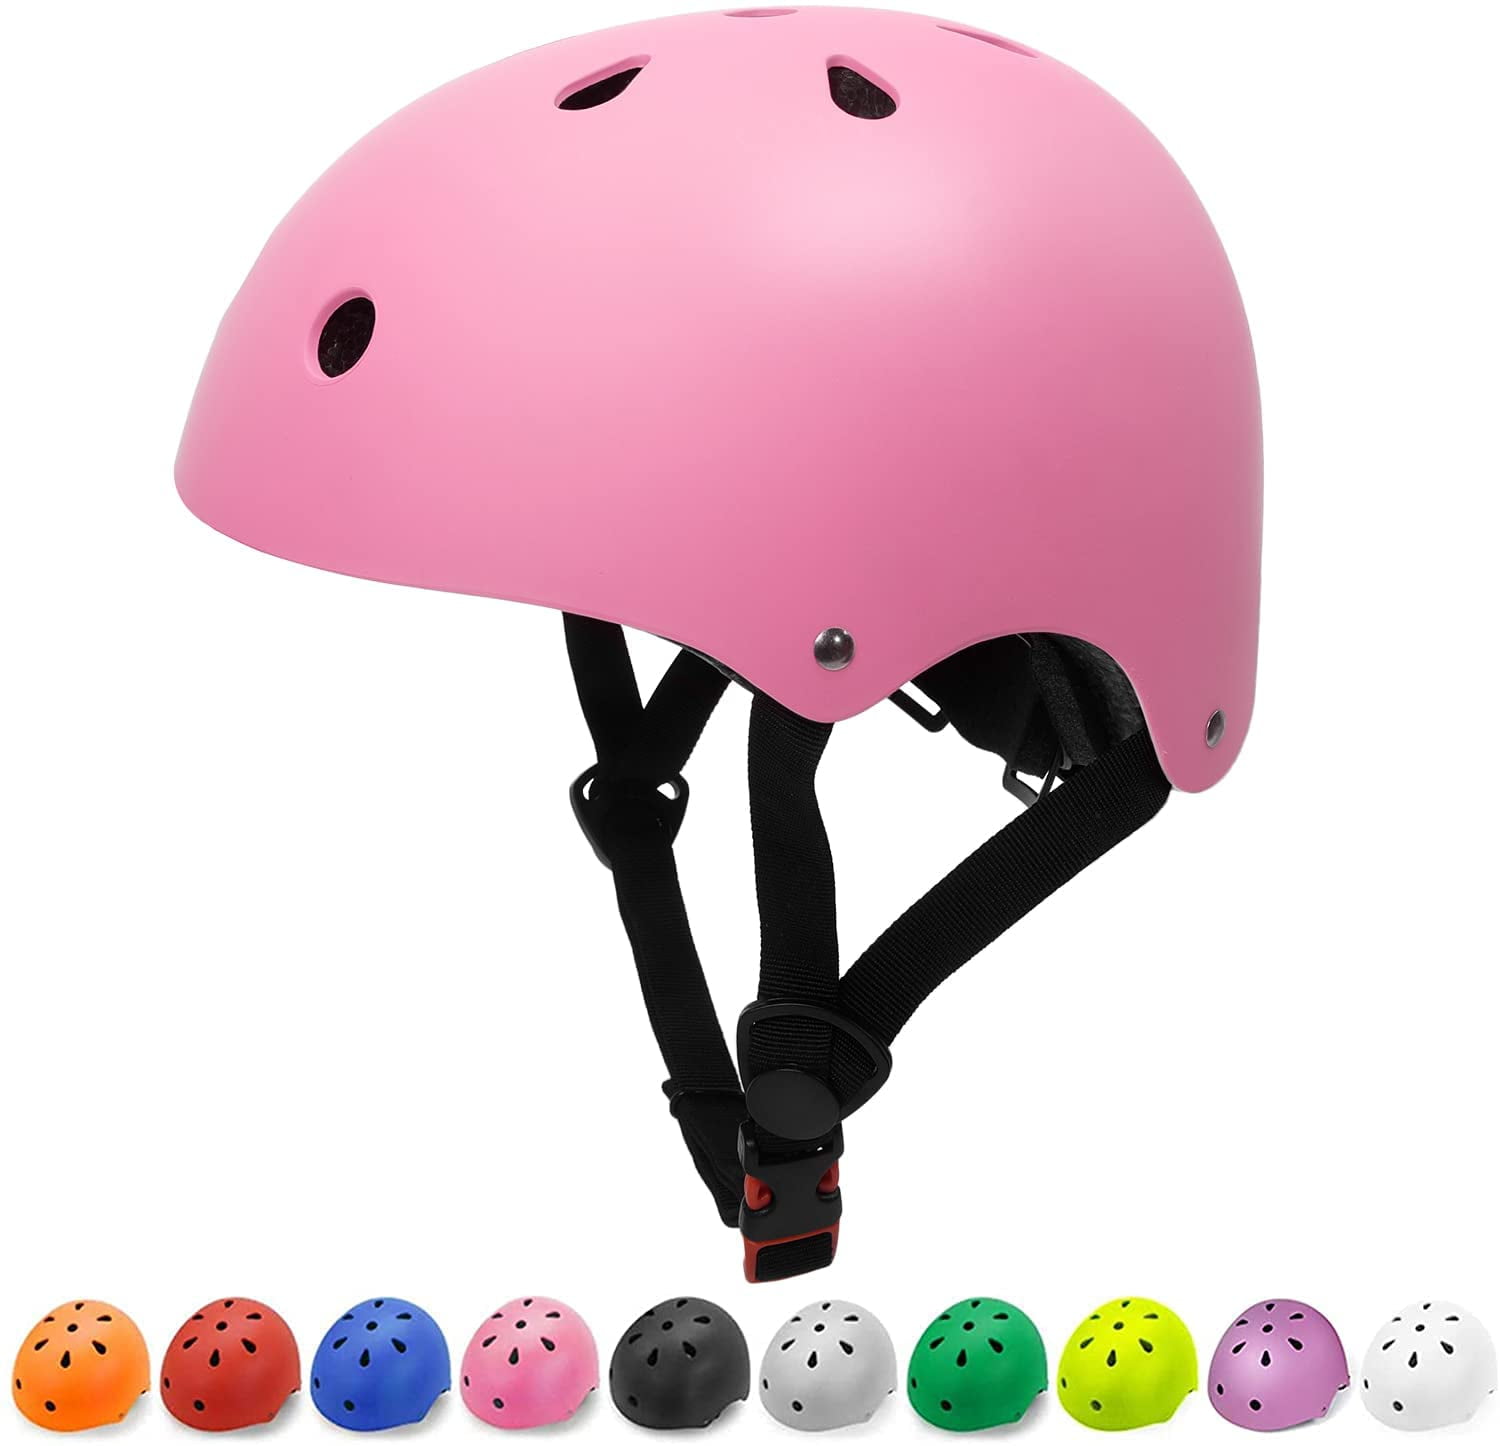 Scooter Roller Bicycle BMX Cycling Skateboard Child Helmet 48-57cm ONT Kids Bike Helmet Adjustable Toddler Helmet for Multi-Sport